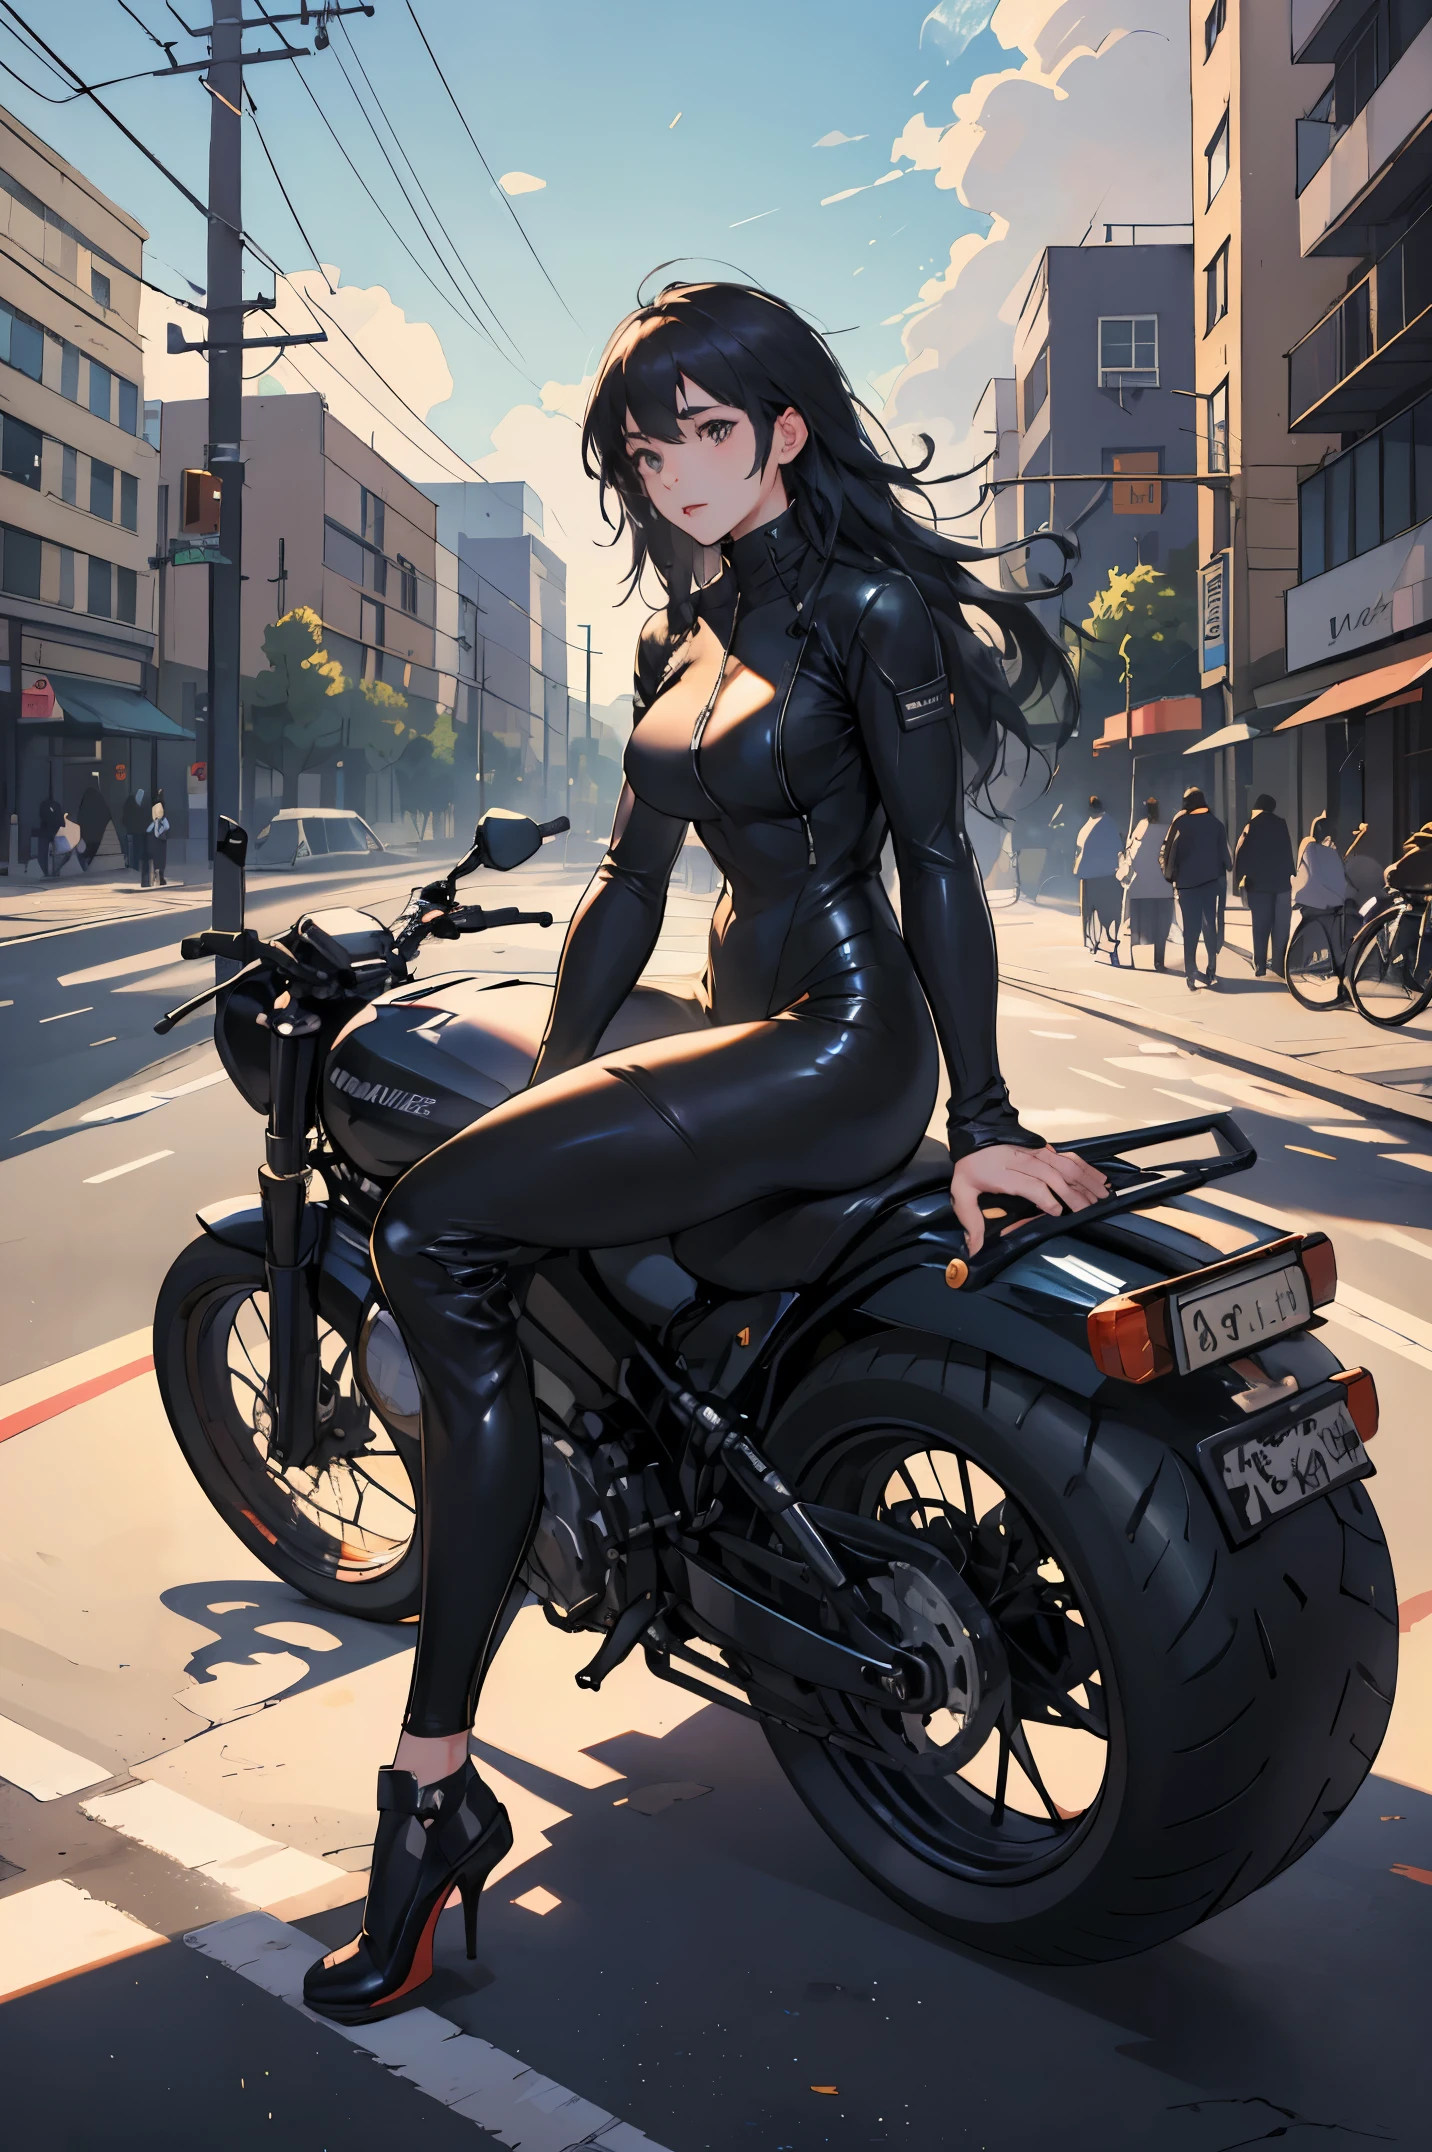 全身, 全身, 頭からつま先まで, 暗い色のバイクに座っている長髪の女性バイカー1人, フルレザーのバイカースーツを着て, 朝, 日光, 郊外の街の自転車の背景, 青い雲,